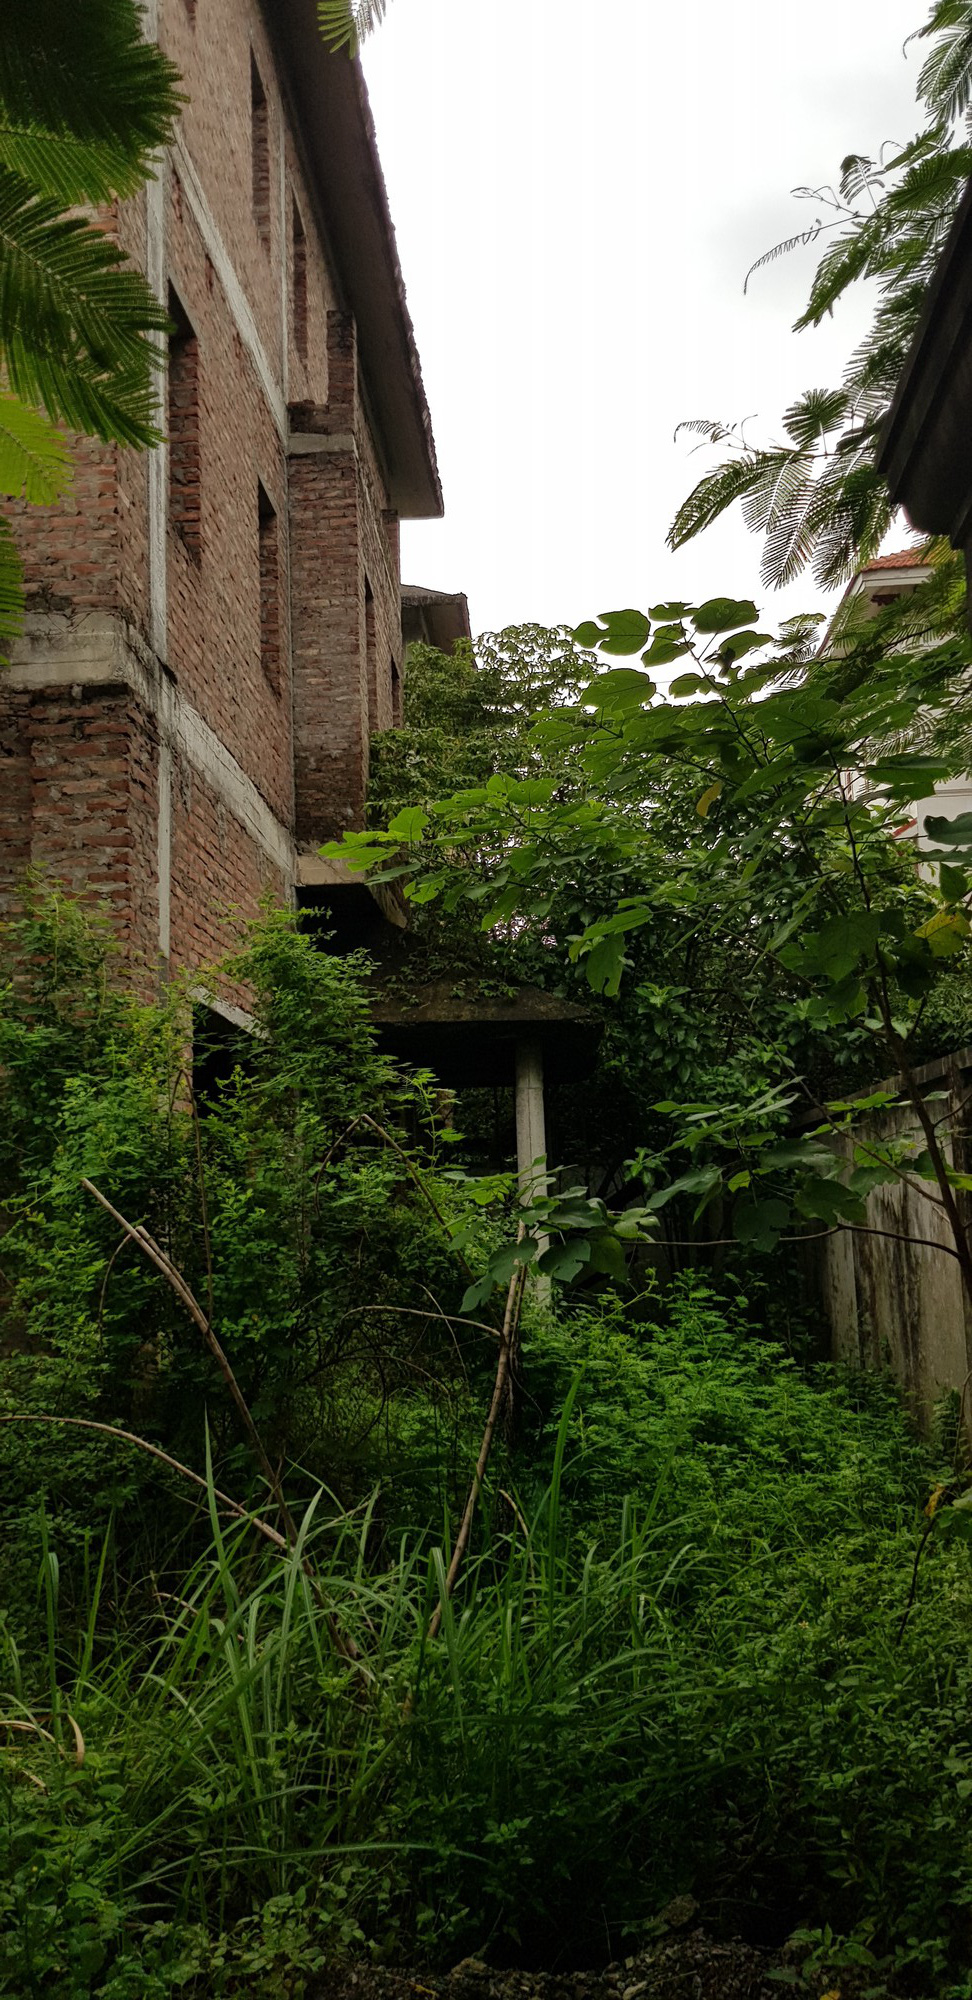 Sau nhiều năm bị bỏ hoang, về kết cấu nhìn chung các căn biệt thự vẫn ổn định nhưng tường và sàn đã mốc rêu cũng như cây cỏ mọc um tùm xung quanh